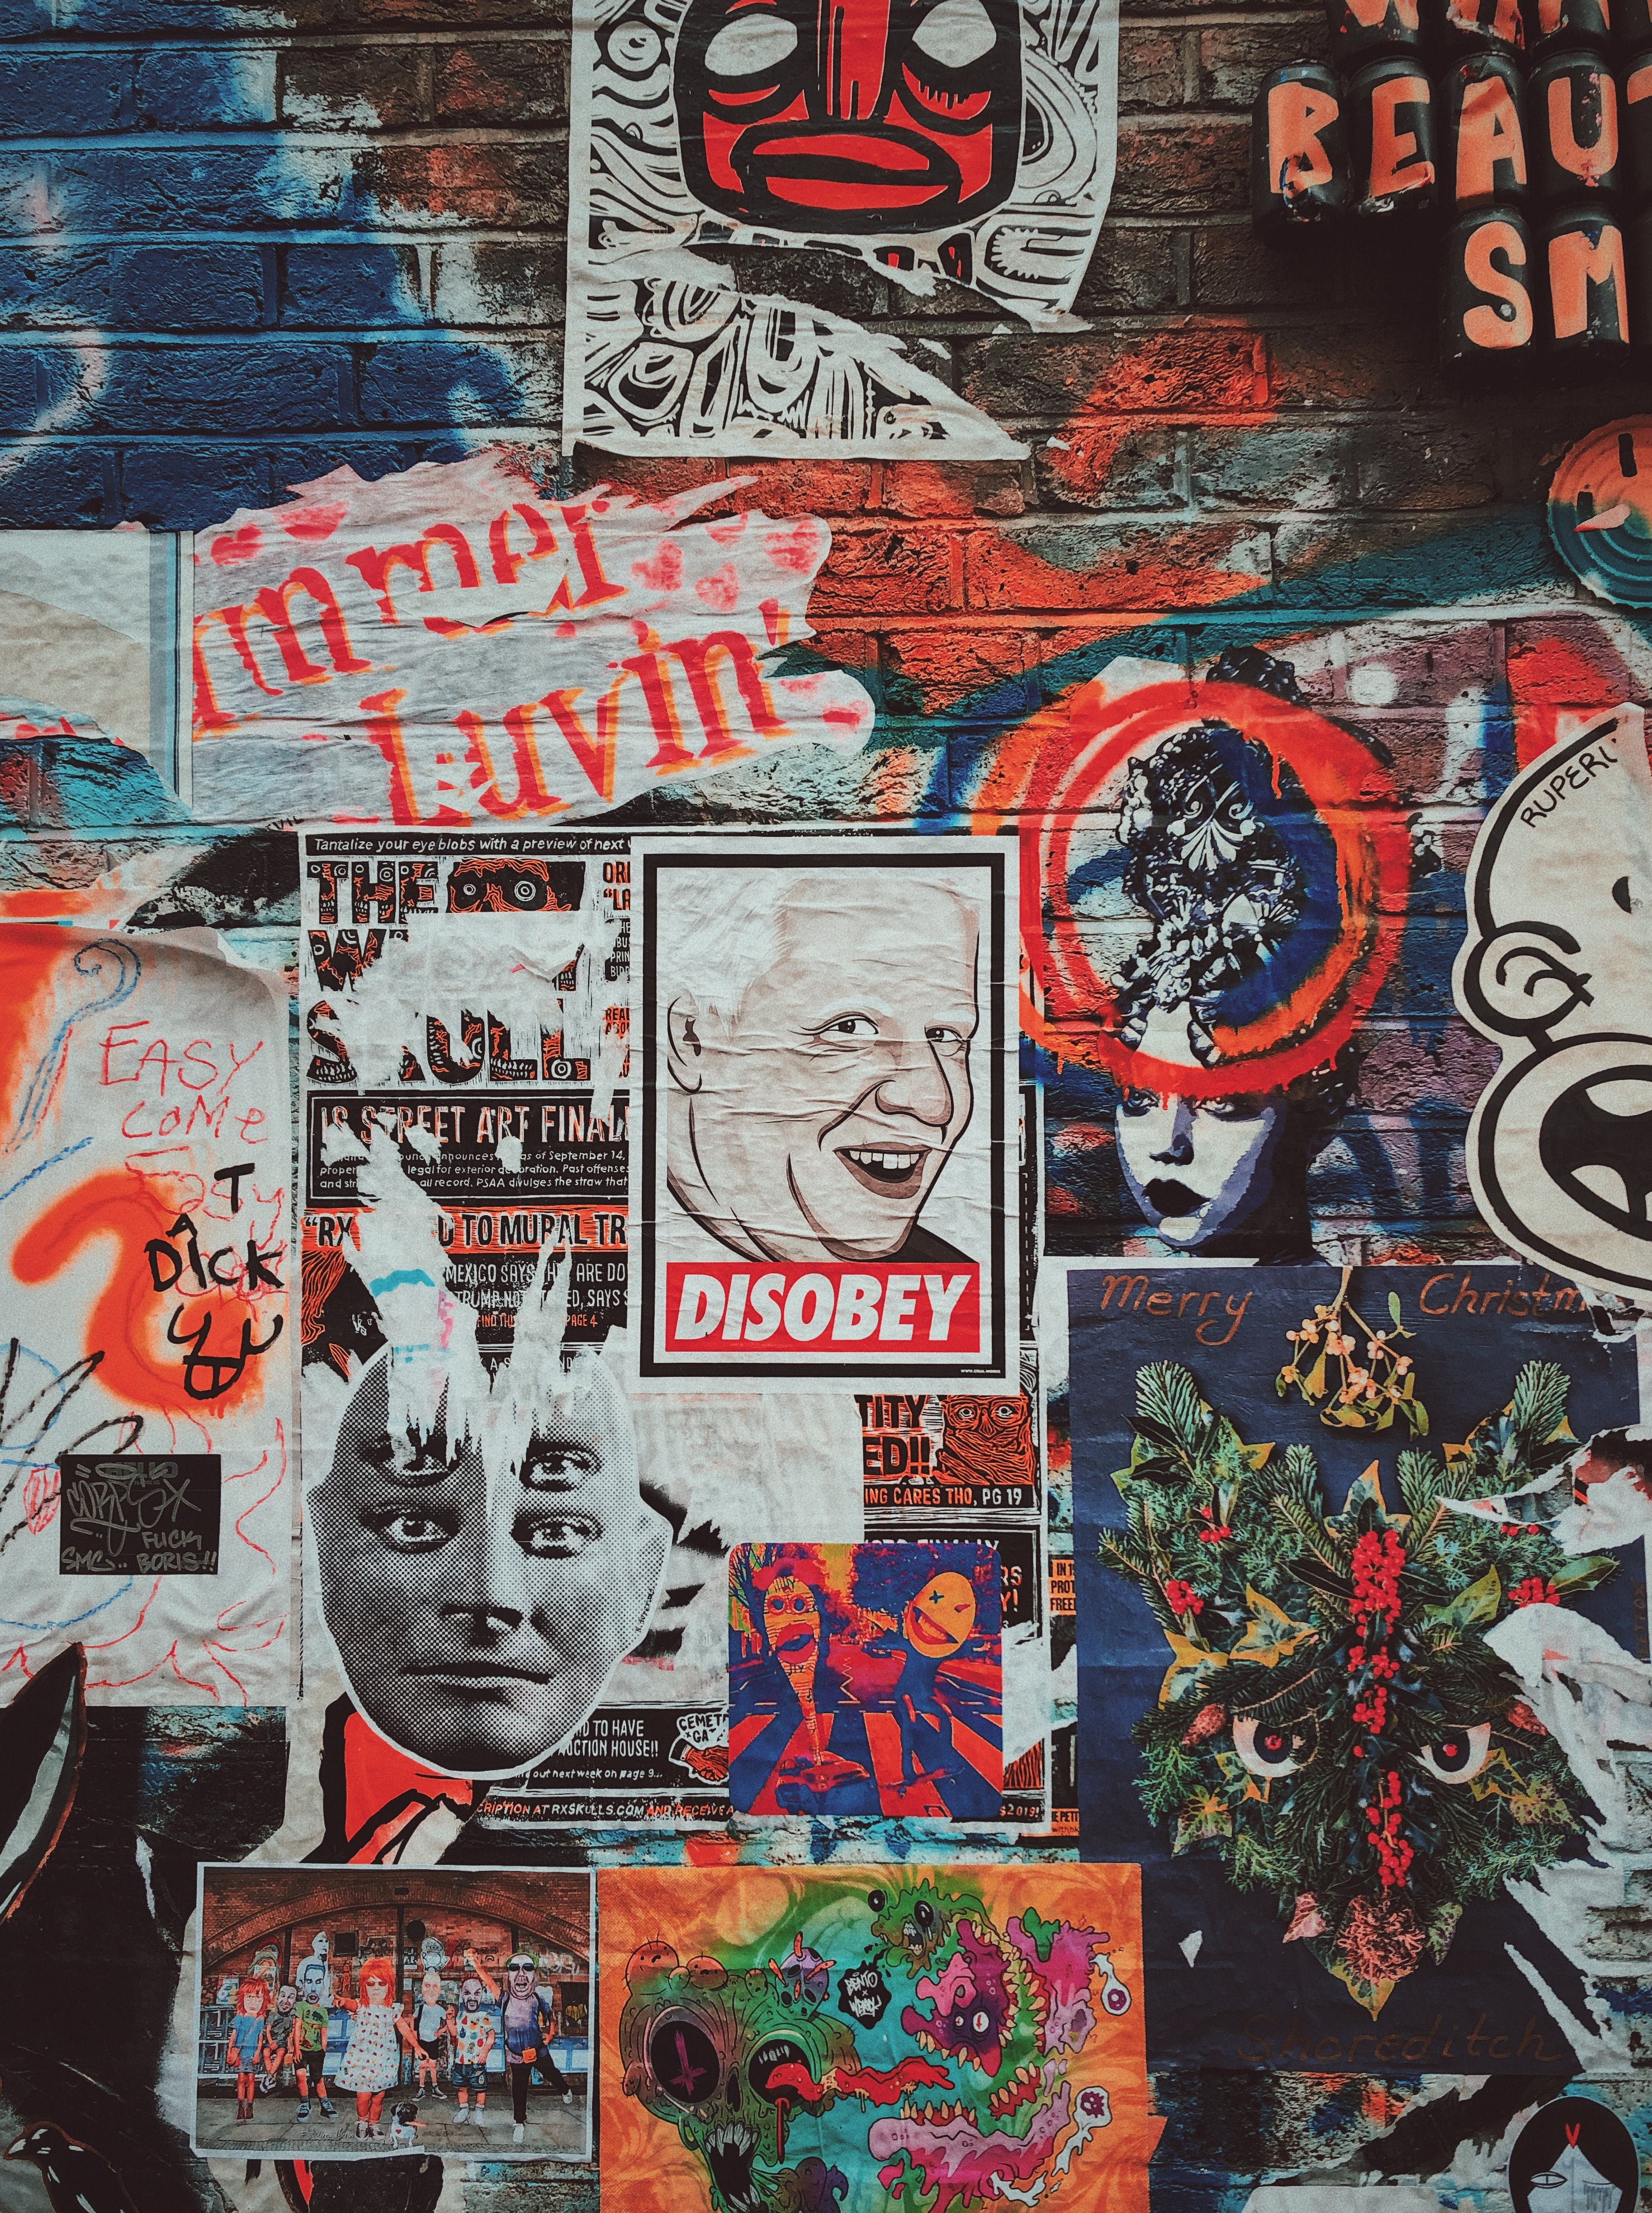 Graffiti and posters on Brick Lane, London